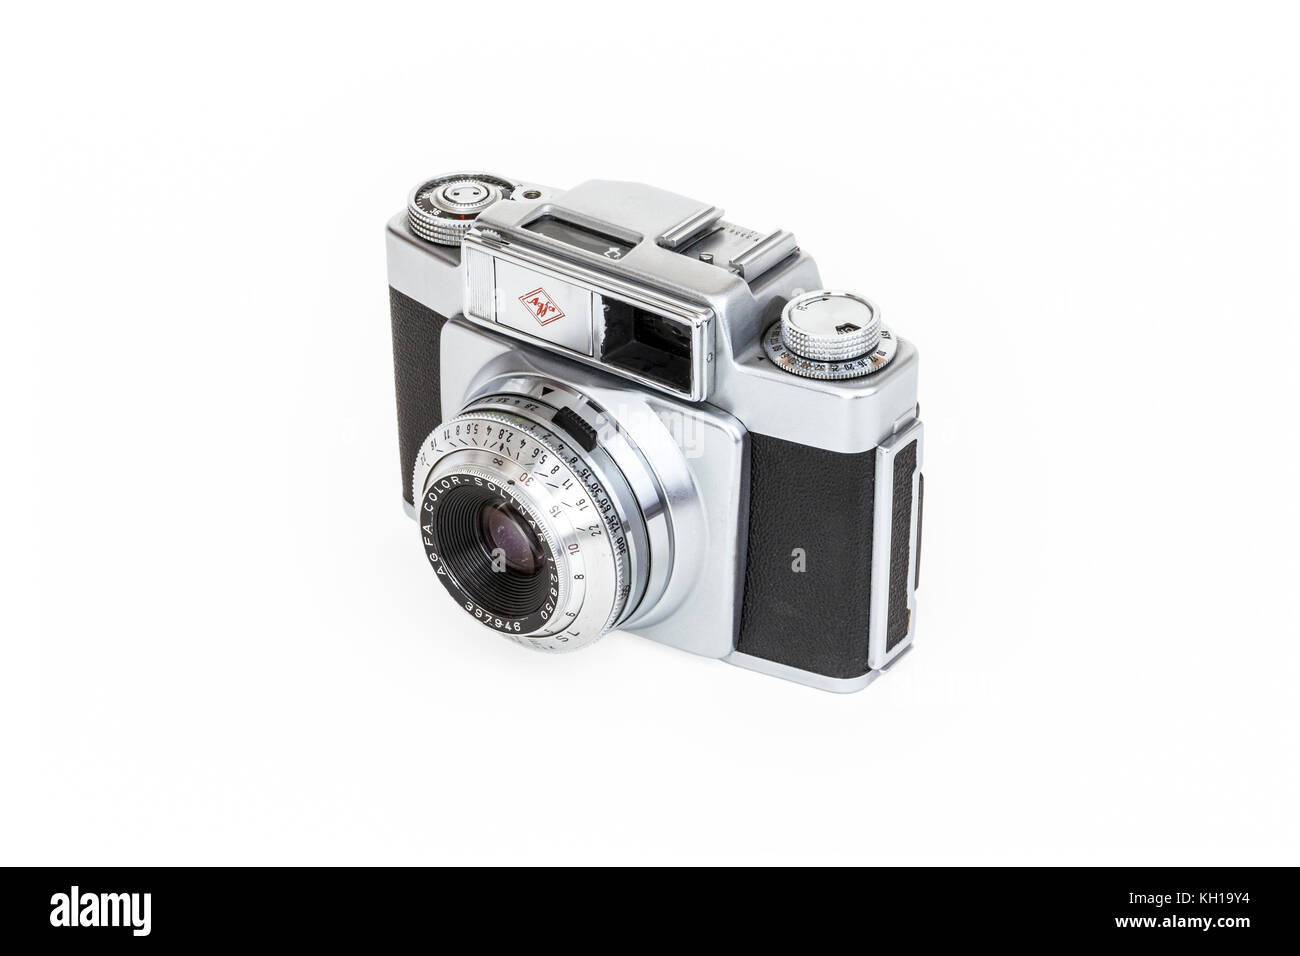 Agfa Silette SL 35mm Caméra viseur avec Prontor SLK objectif 50 mm, 1957, isolé sur un fond blanc. Banque D'Images